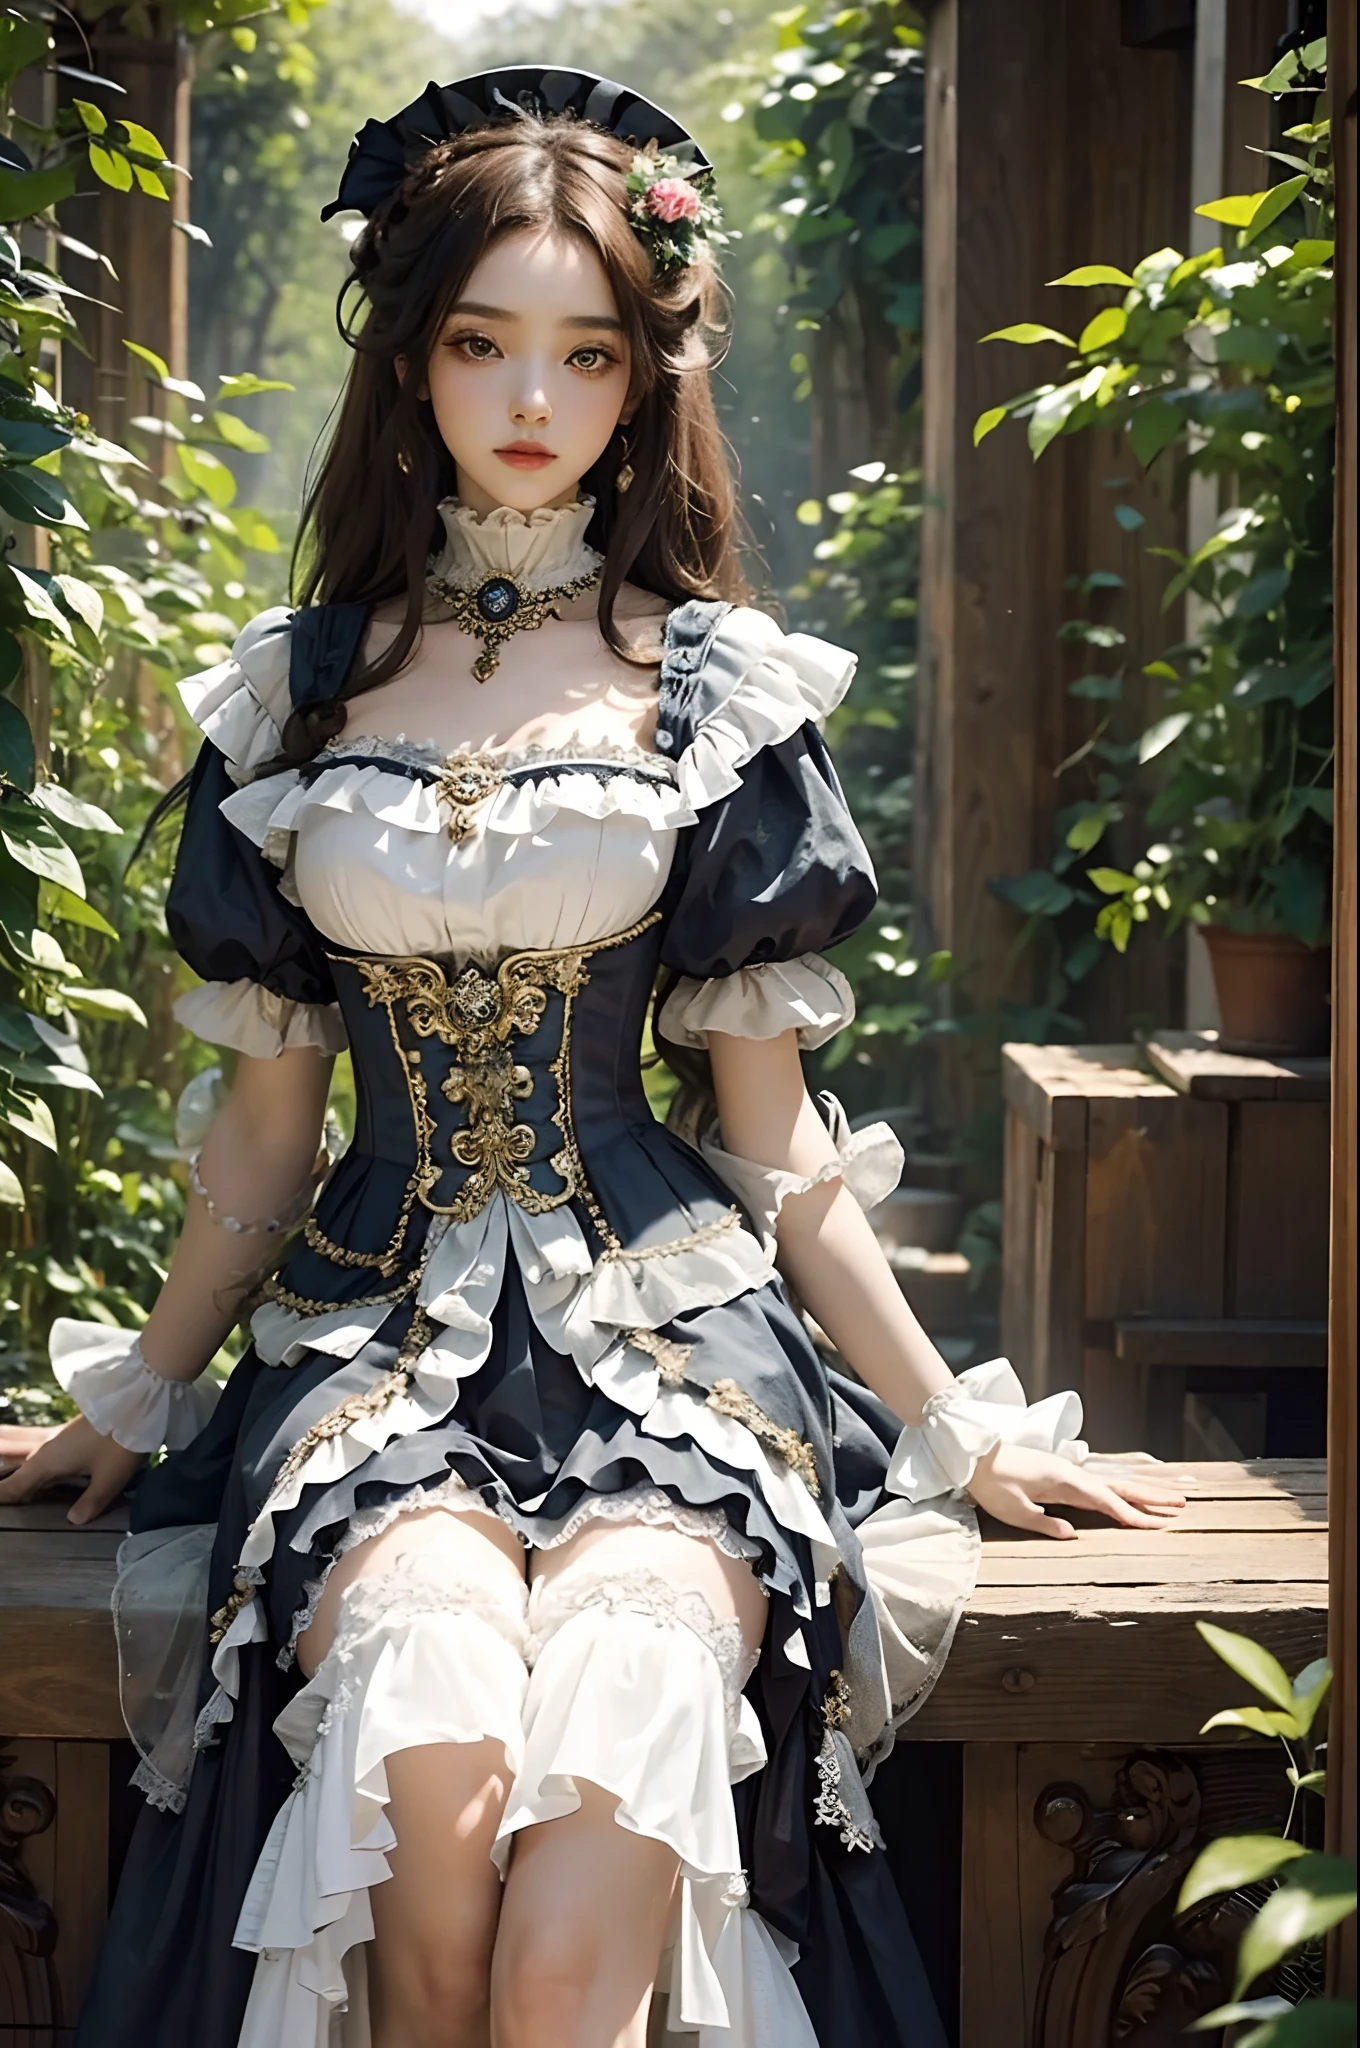 (Meisterwerk), (beste Qualität), (perfekter Körper), 1 Mädchen, atemberaubende Schönheit, schönes Mädchen, Viktorianisches ästhetisches Outfit, Langes Kleid, uralt